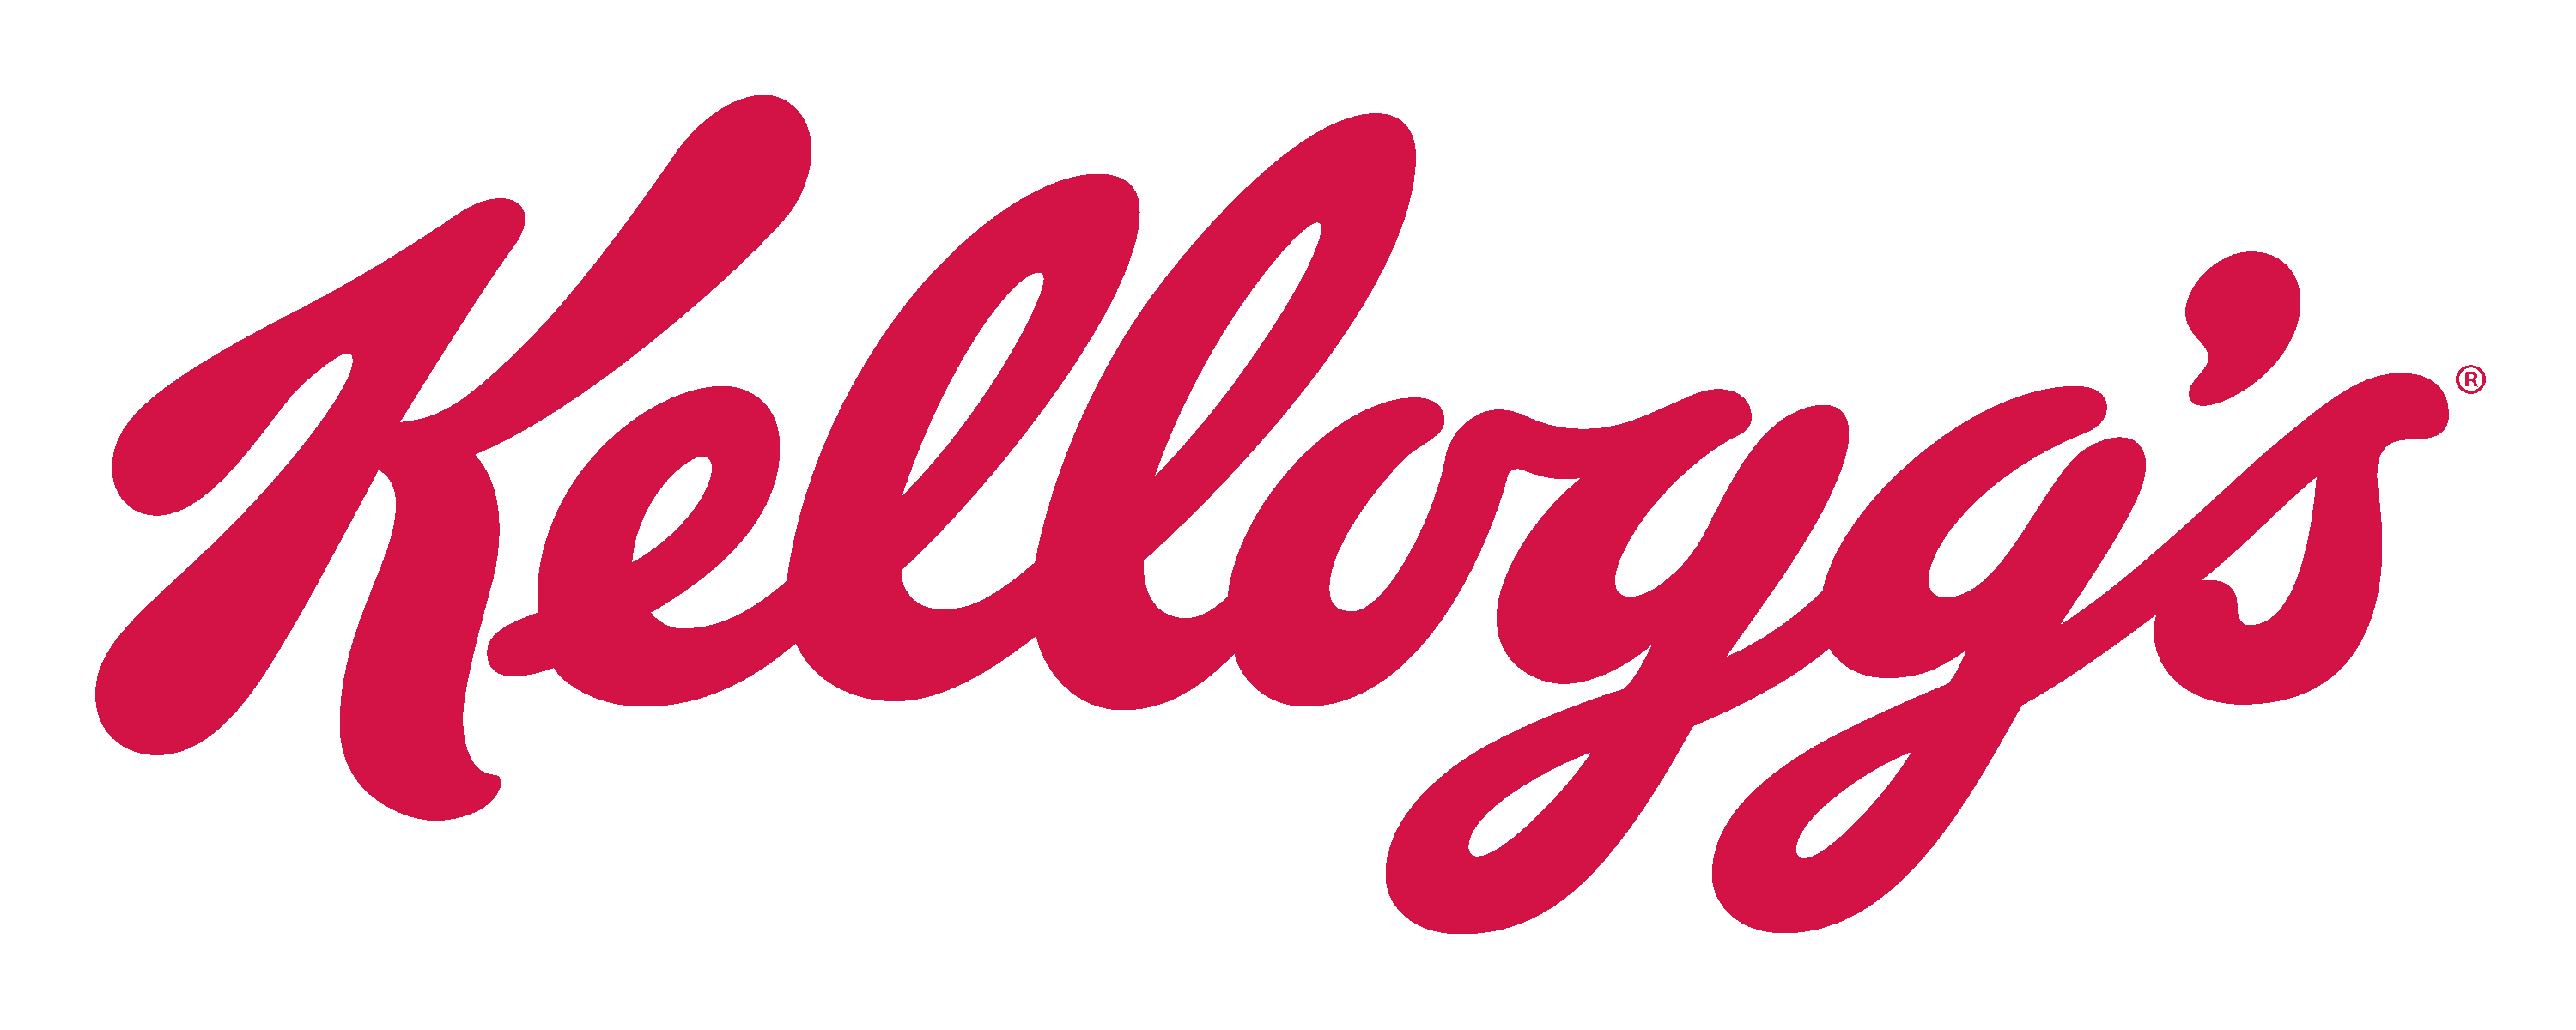 File:Kelloggu0027s logo.png